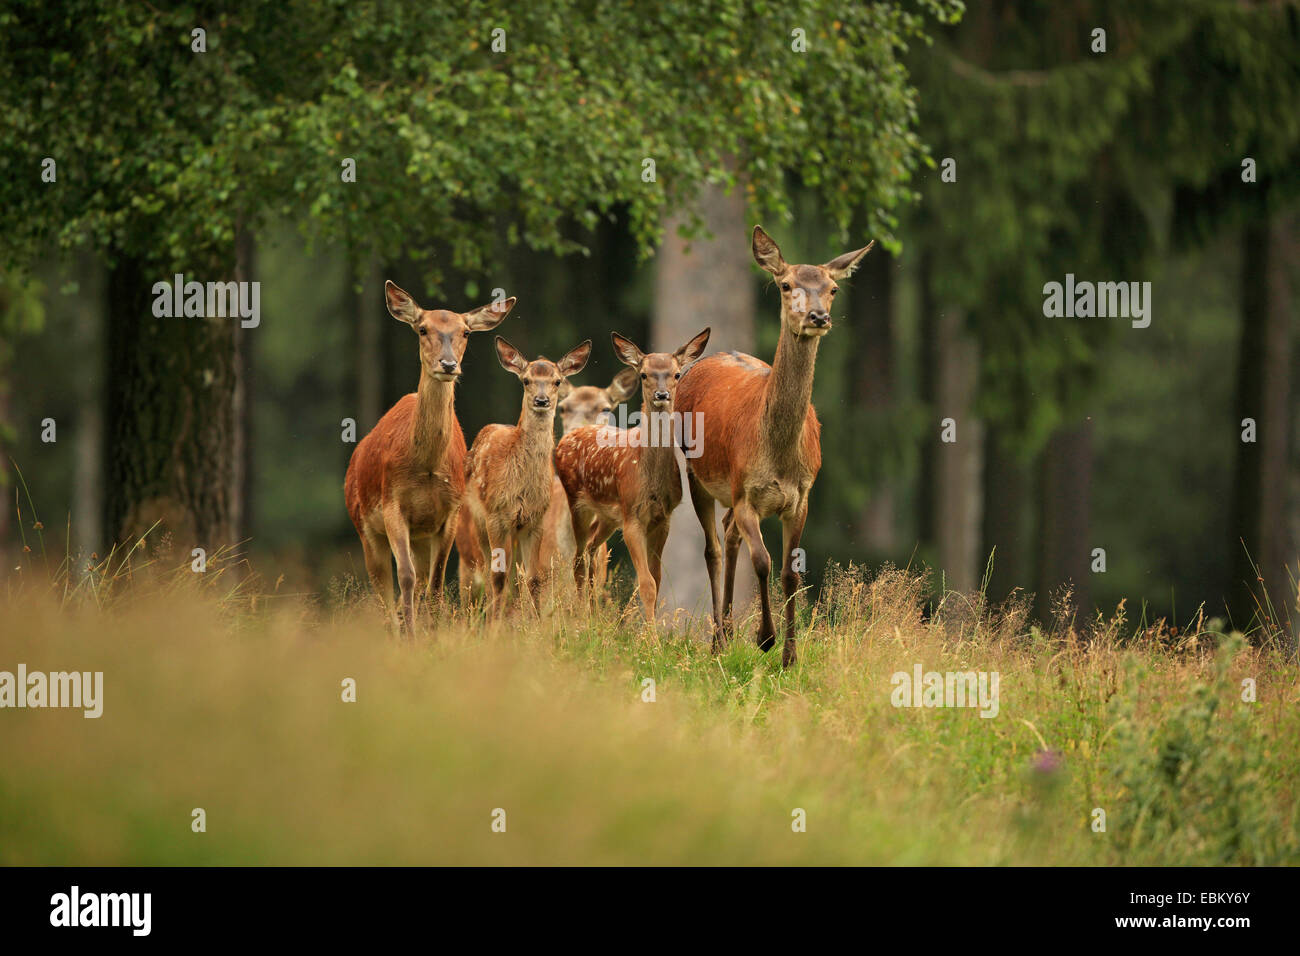 Red Deer (Cervus elaphus), biches les faons marcher dans une clairière, l'Allemagne, l'Erz Mountains Banque D'Images